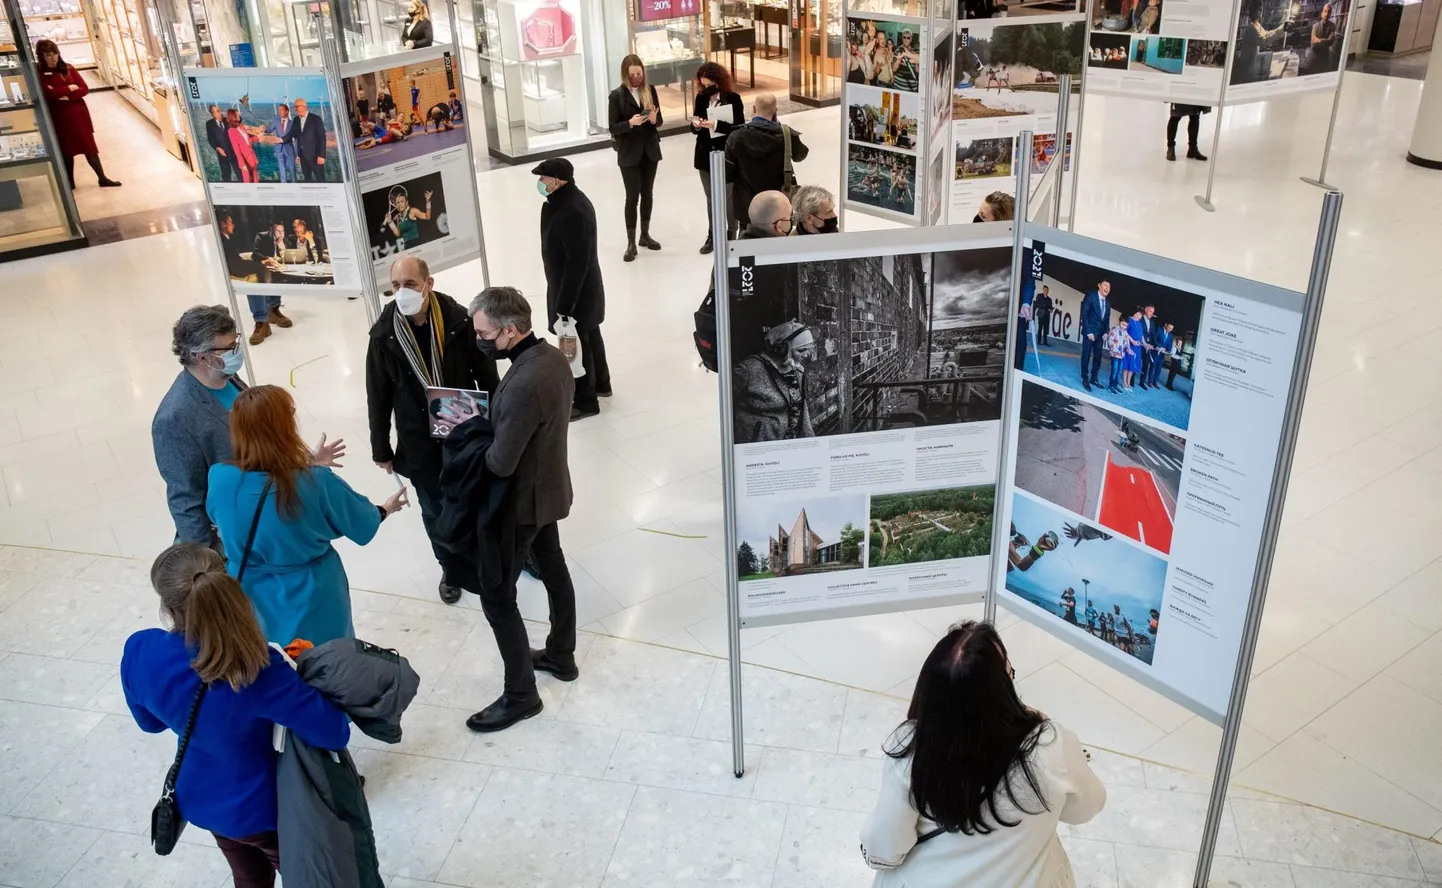 Eile toimus Tallinnas Viru keskuses eelmise aasta Eesti pressifoto näituse avamine, kus kuulutati välja ka foto- ja videopreemiate võitjad.